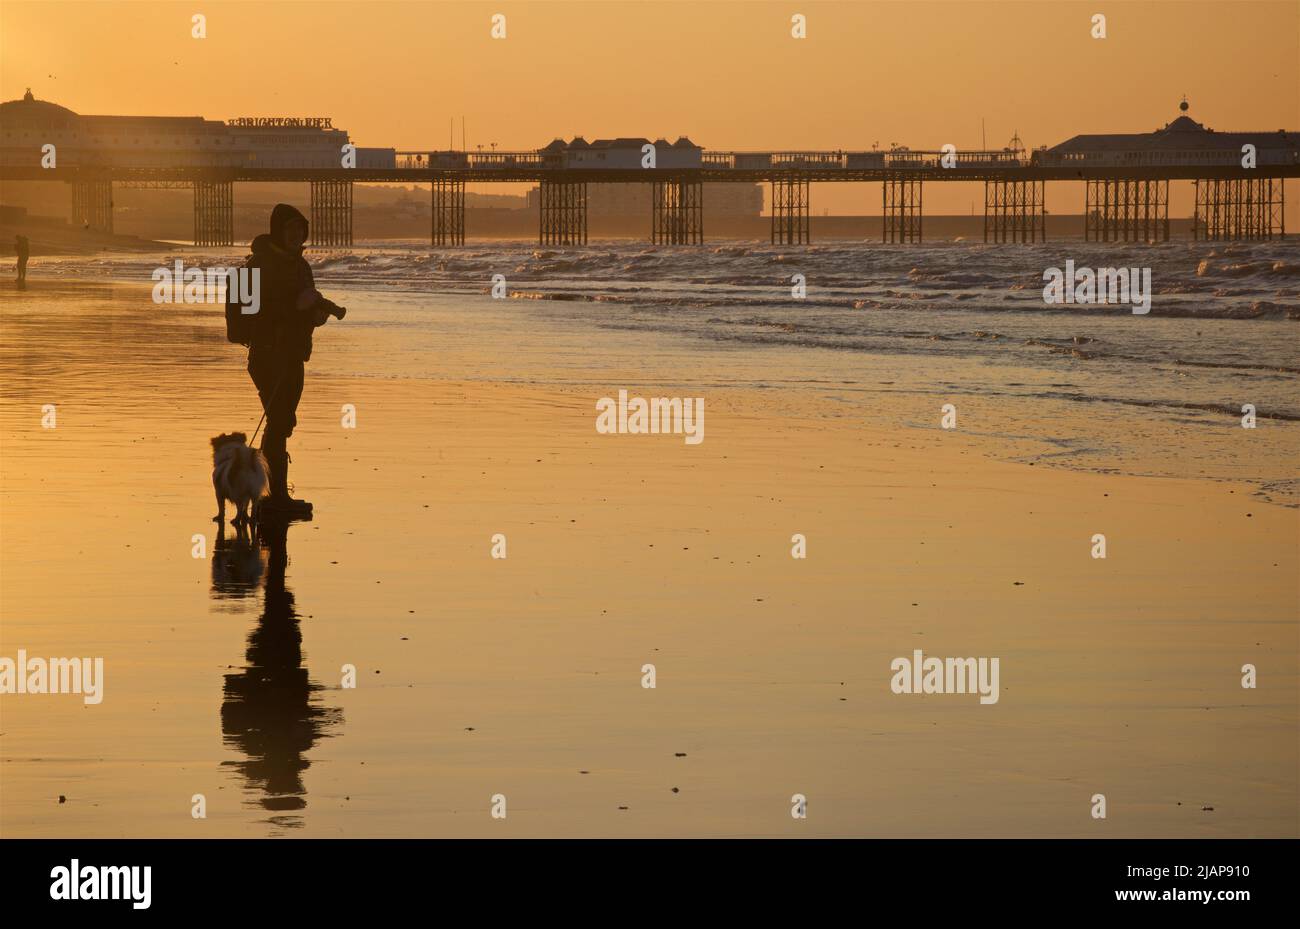 Silhouettes de l'aube sur la plage à marée basse, Brighton & Hove, East Sussex, Angleterre, Royaume-Uni. Promenade matinale avec un chien sur la plage. Brighton Palace Pier en arrière-plan ; photographe avec appareil photo. Banque D'Images